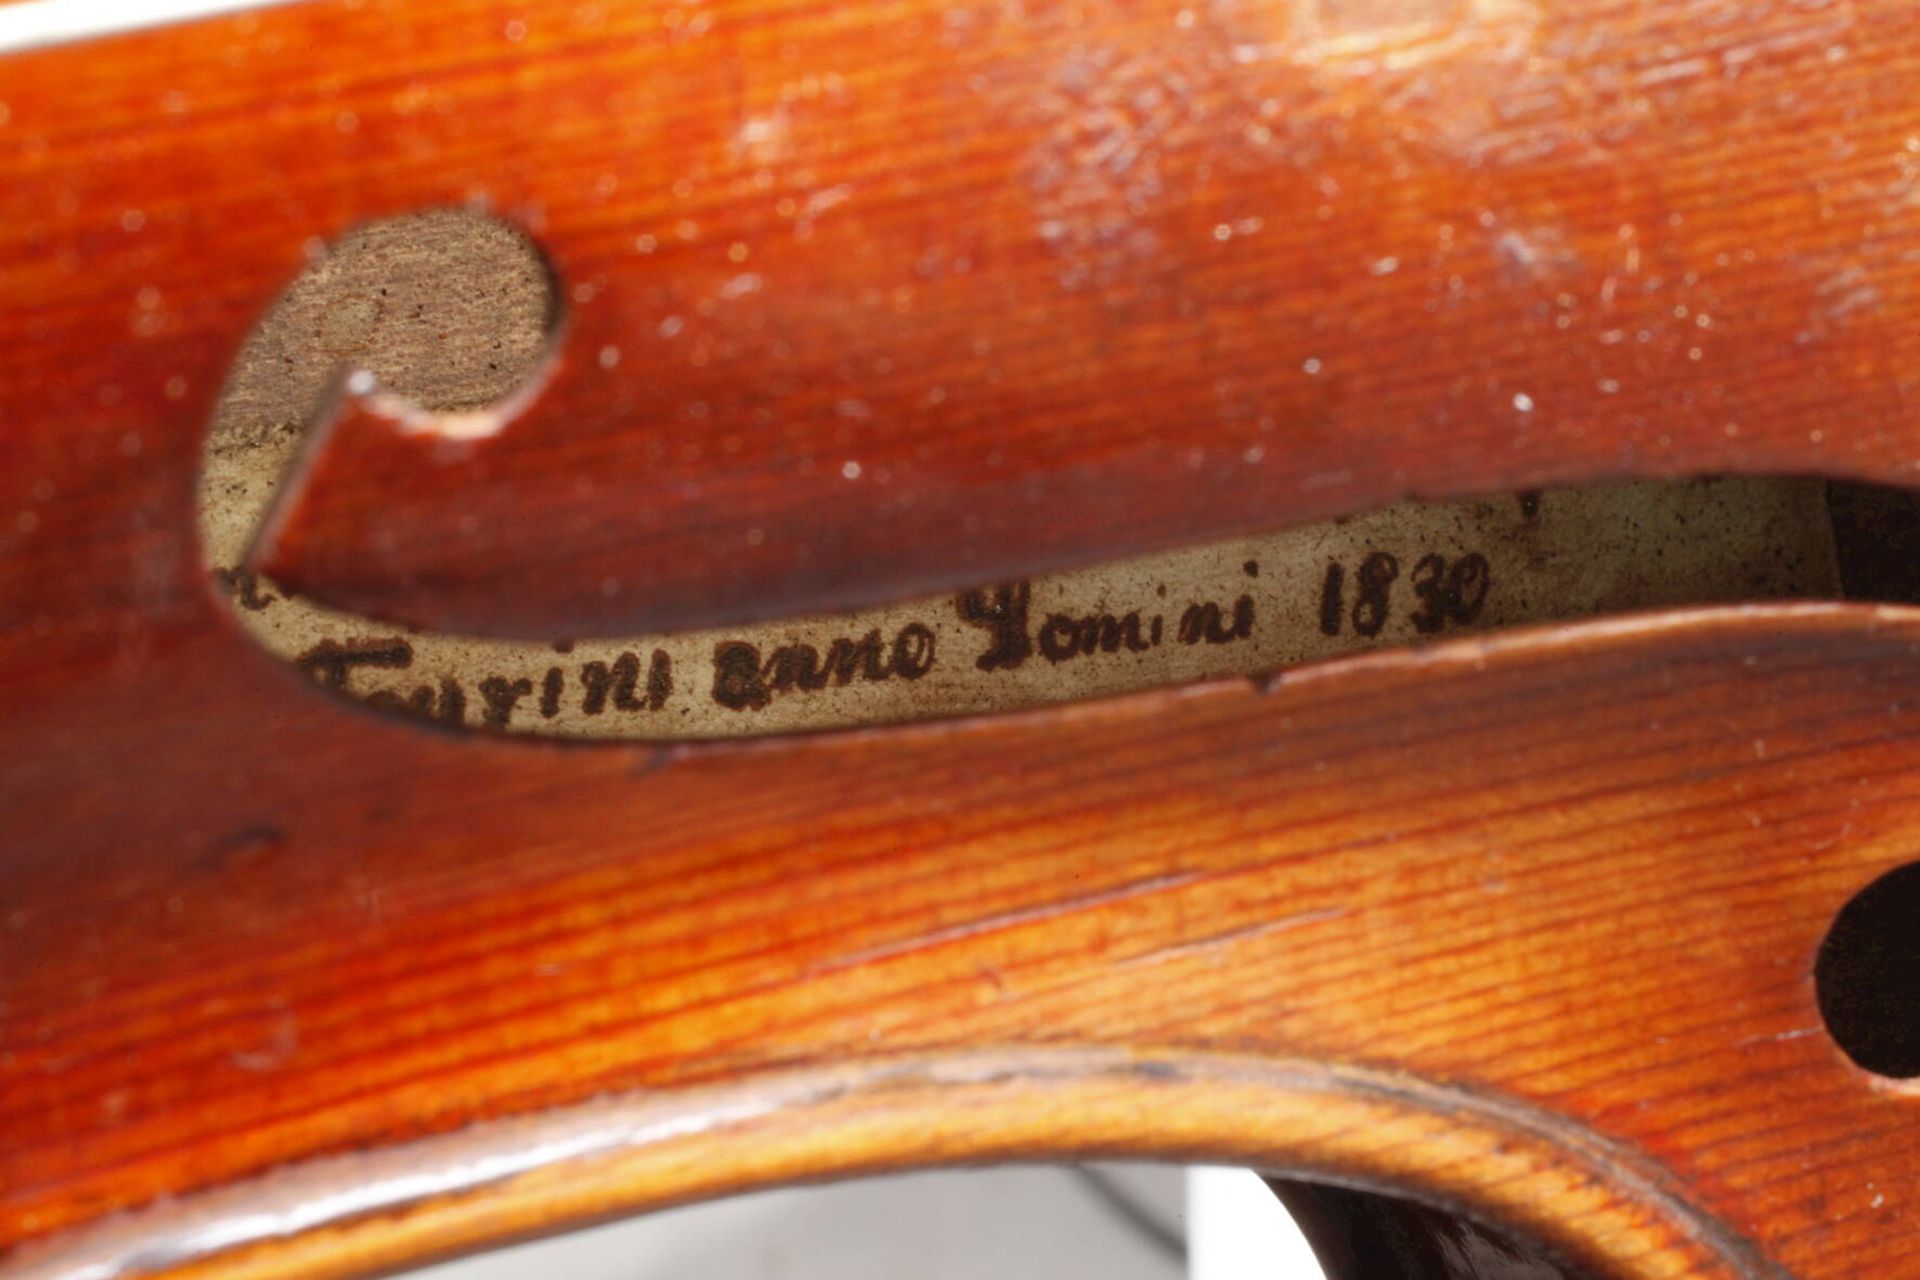 Violine auf Zettel bezeichnet Joannes Franciscus Pressenda p Raphael fecit Taurini anno domini 1830, - Image 7 of 7